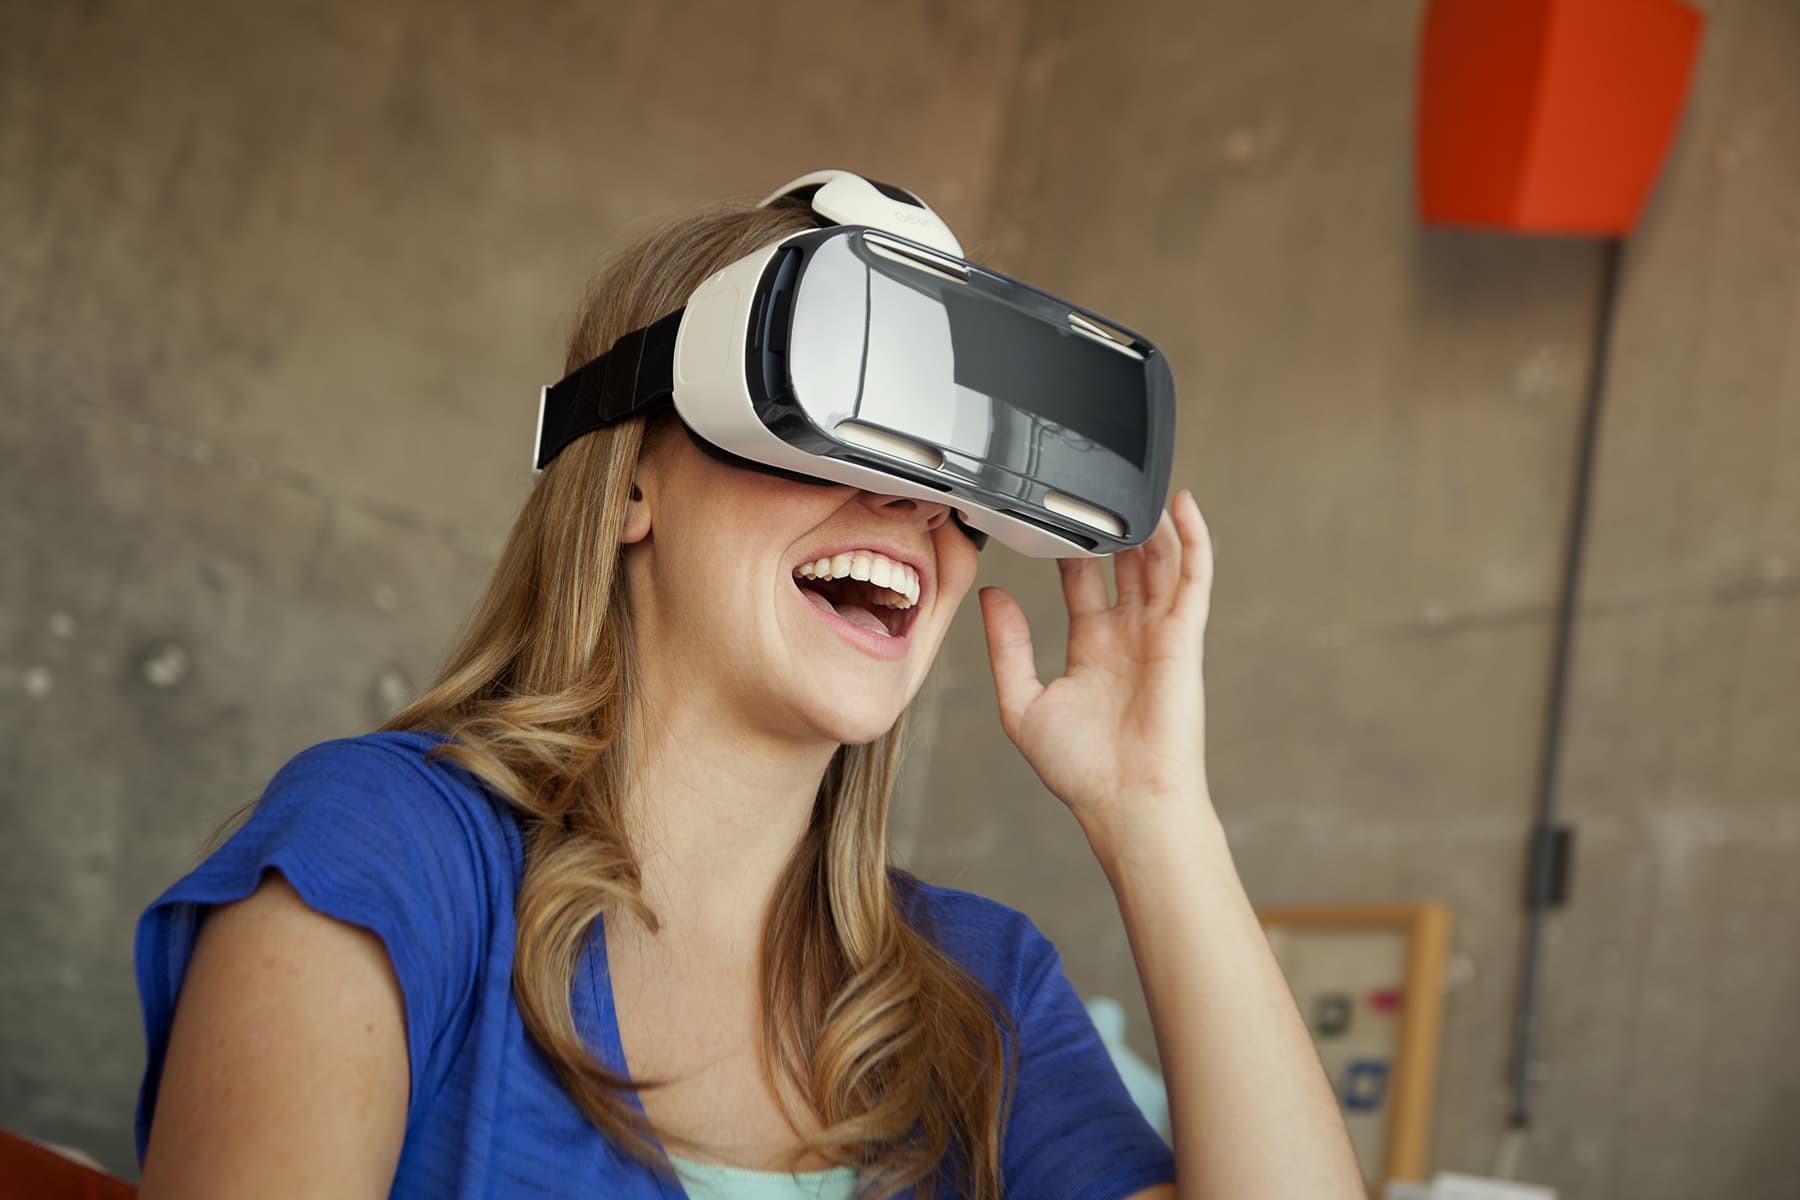 Виар очки реальности. Шлем виртуальной реальности LG 360 VR. Очки дополненной реальности Samsung. Виар очки самсунг. Очкивир туальнайряльности.